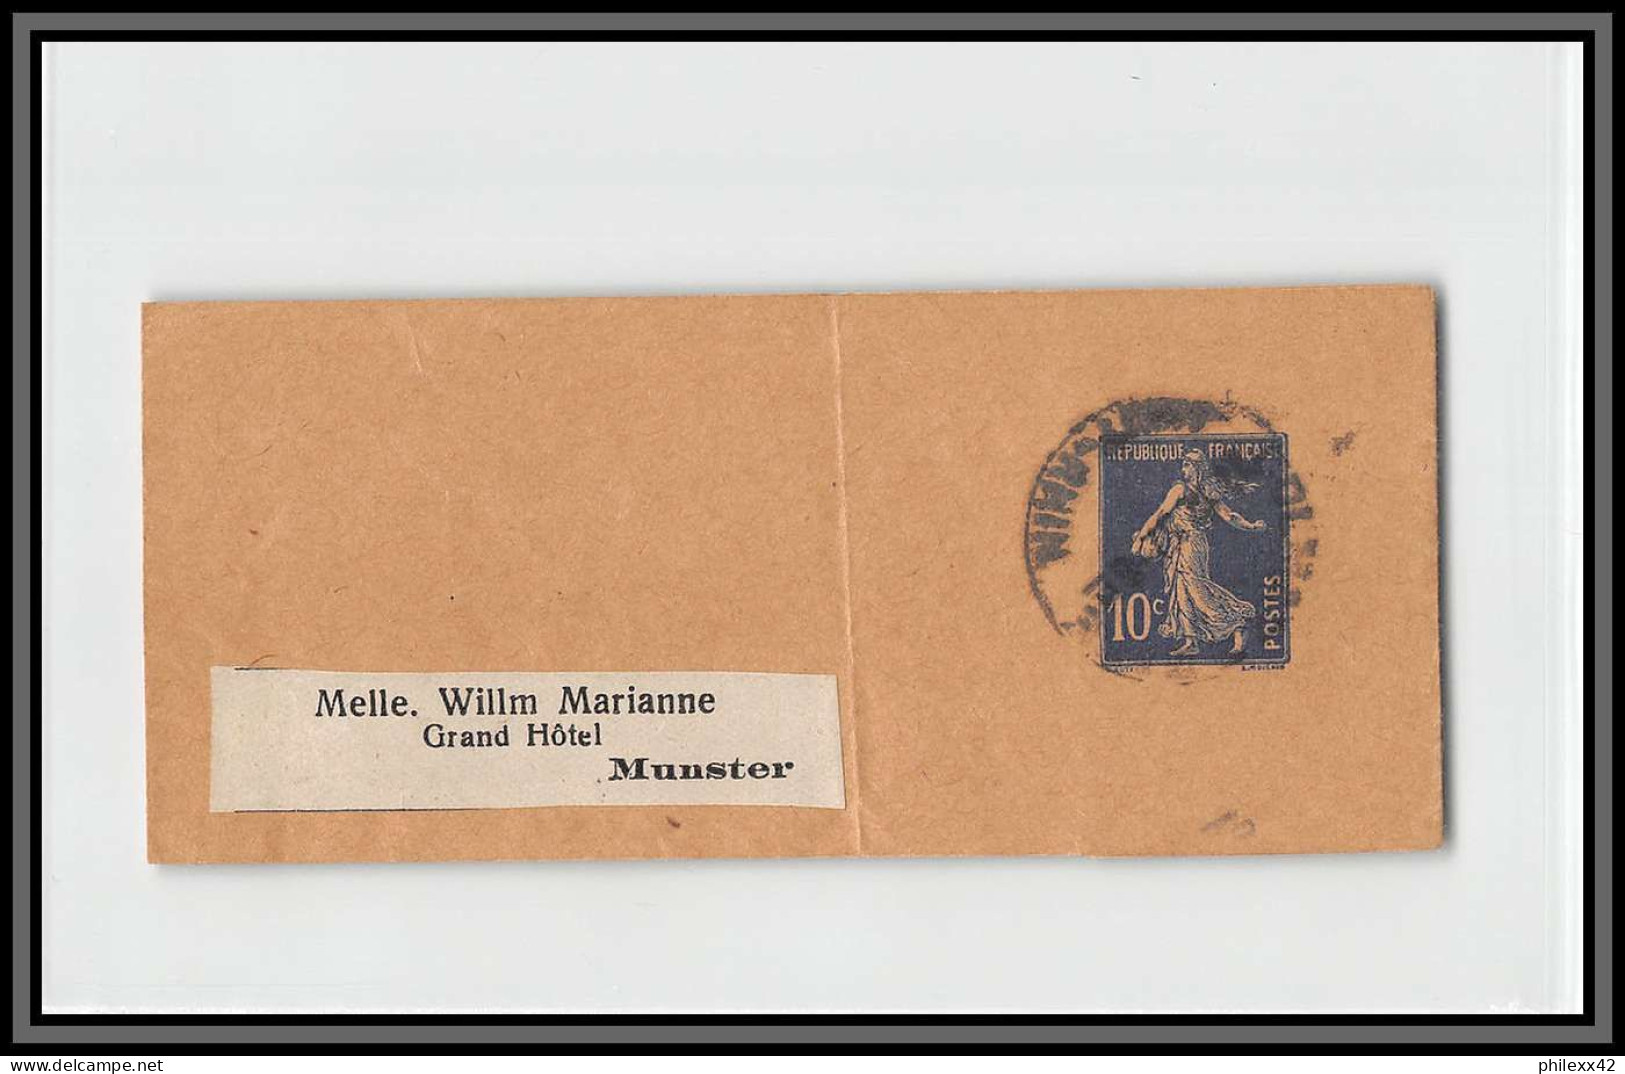 75061 10c BLEU Camée SEC F1 Date 732 Munster Semeuse Entier Postal Stationery Bande Journal Wrapper France - Bandas Para Periodicos